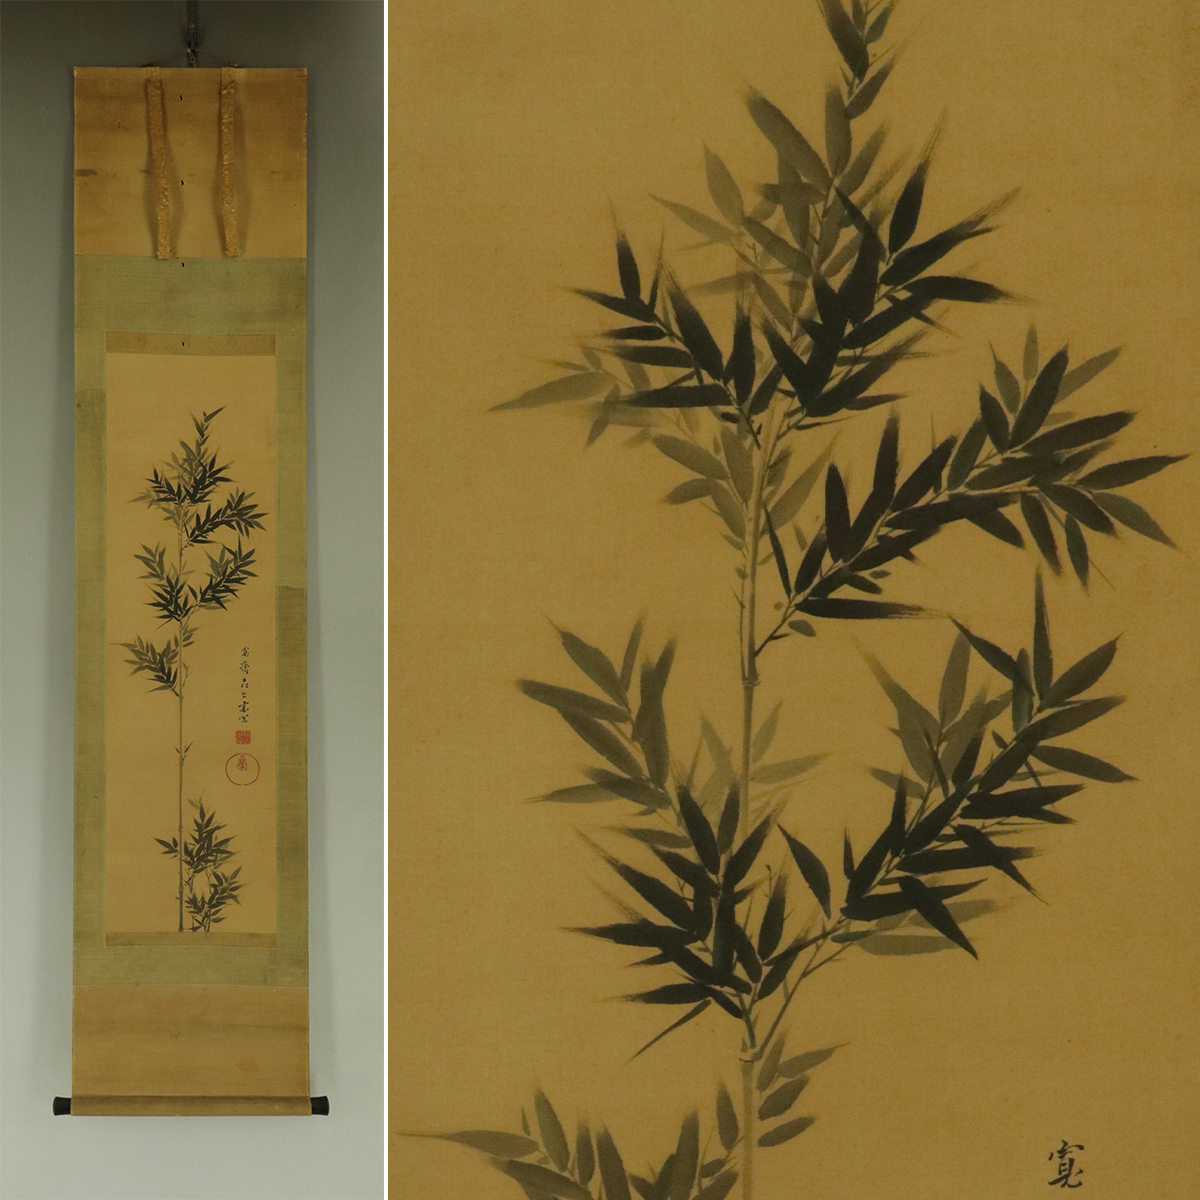 [Reproduction] Mori Kansai [Ink Bamboo] ◆Livre en soie◆Boîte combinée◆Parchemin suspendu t04079, Peinture, Peinture japonaise, Paysage, Vent et lune